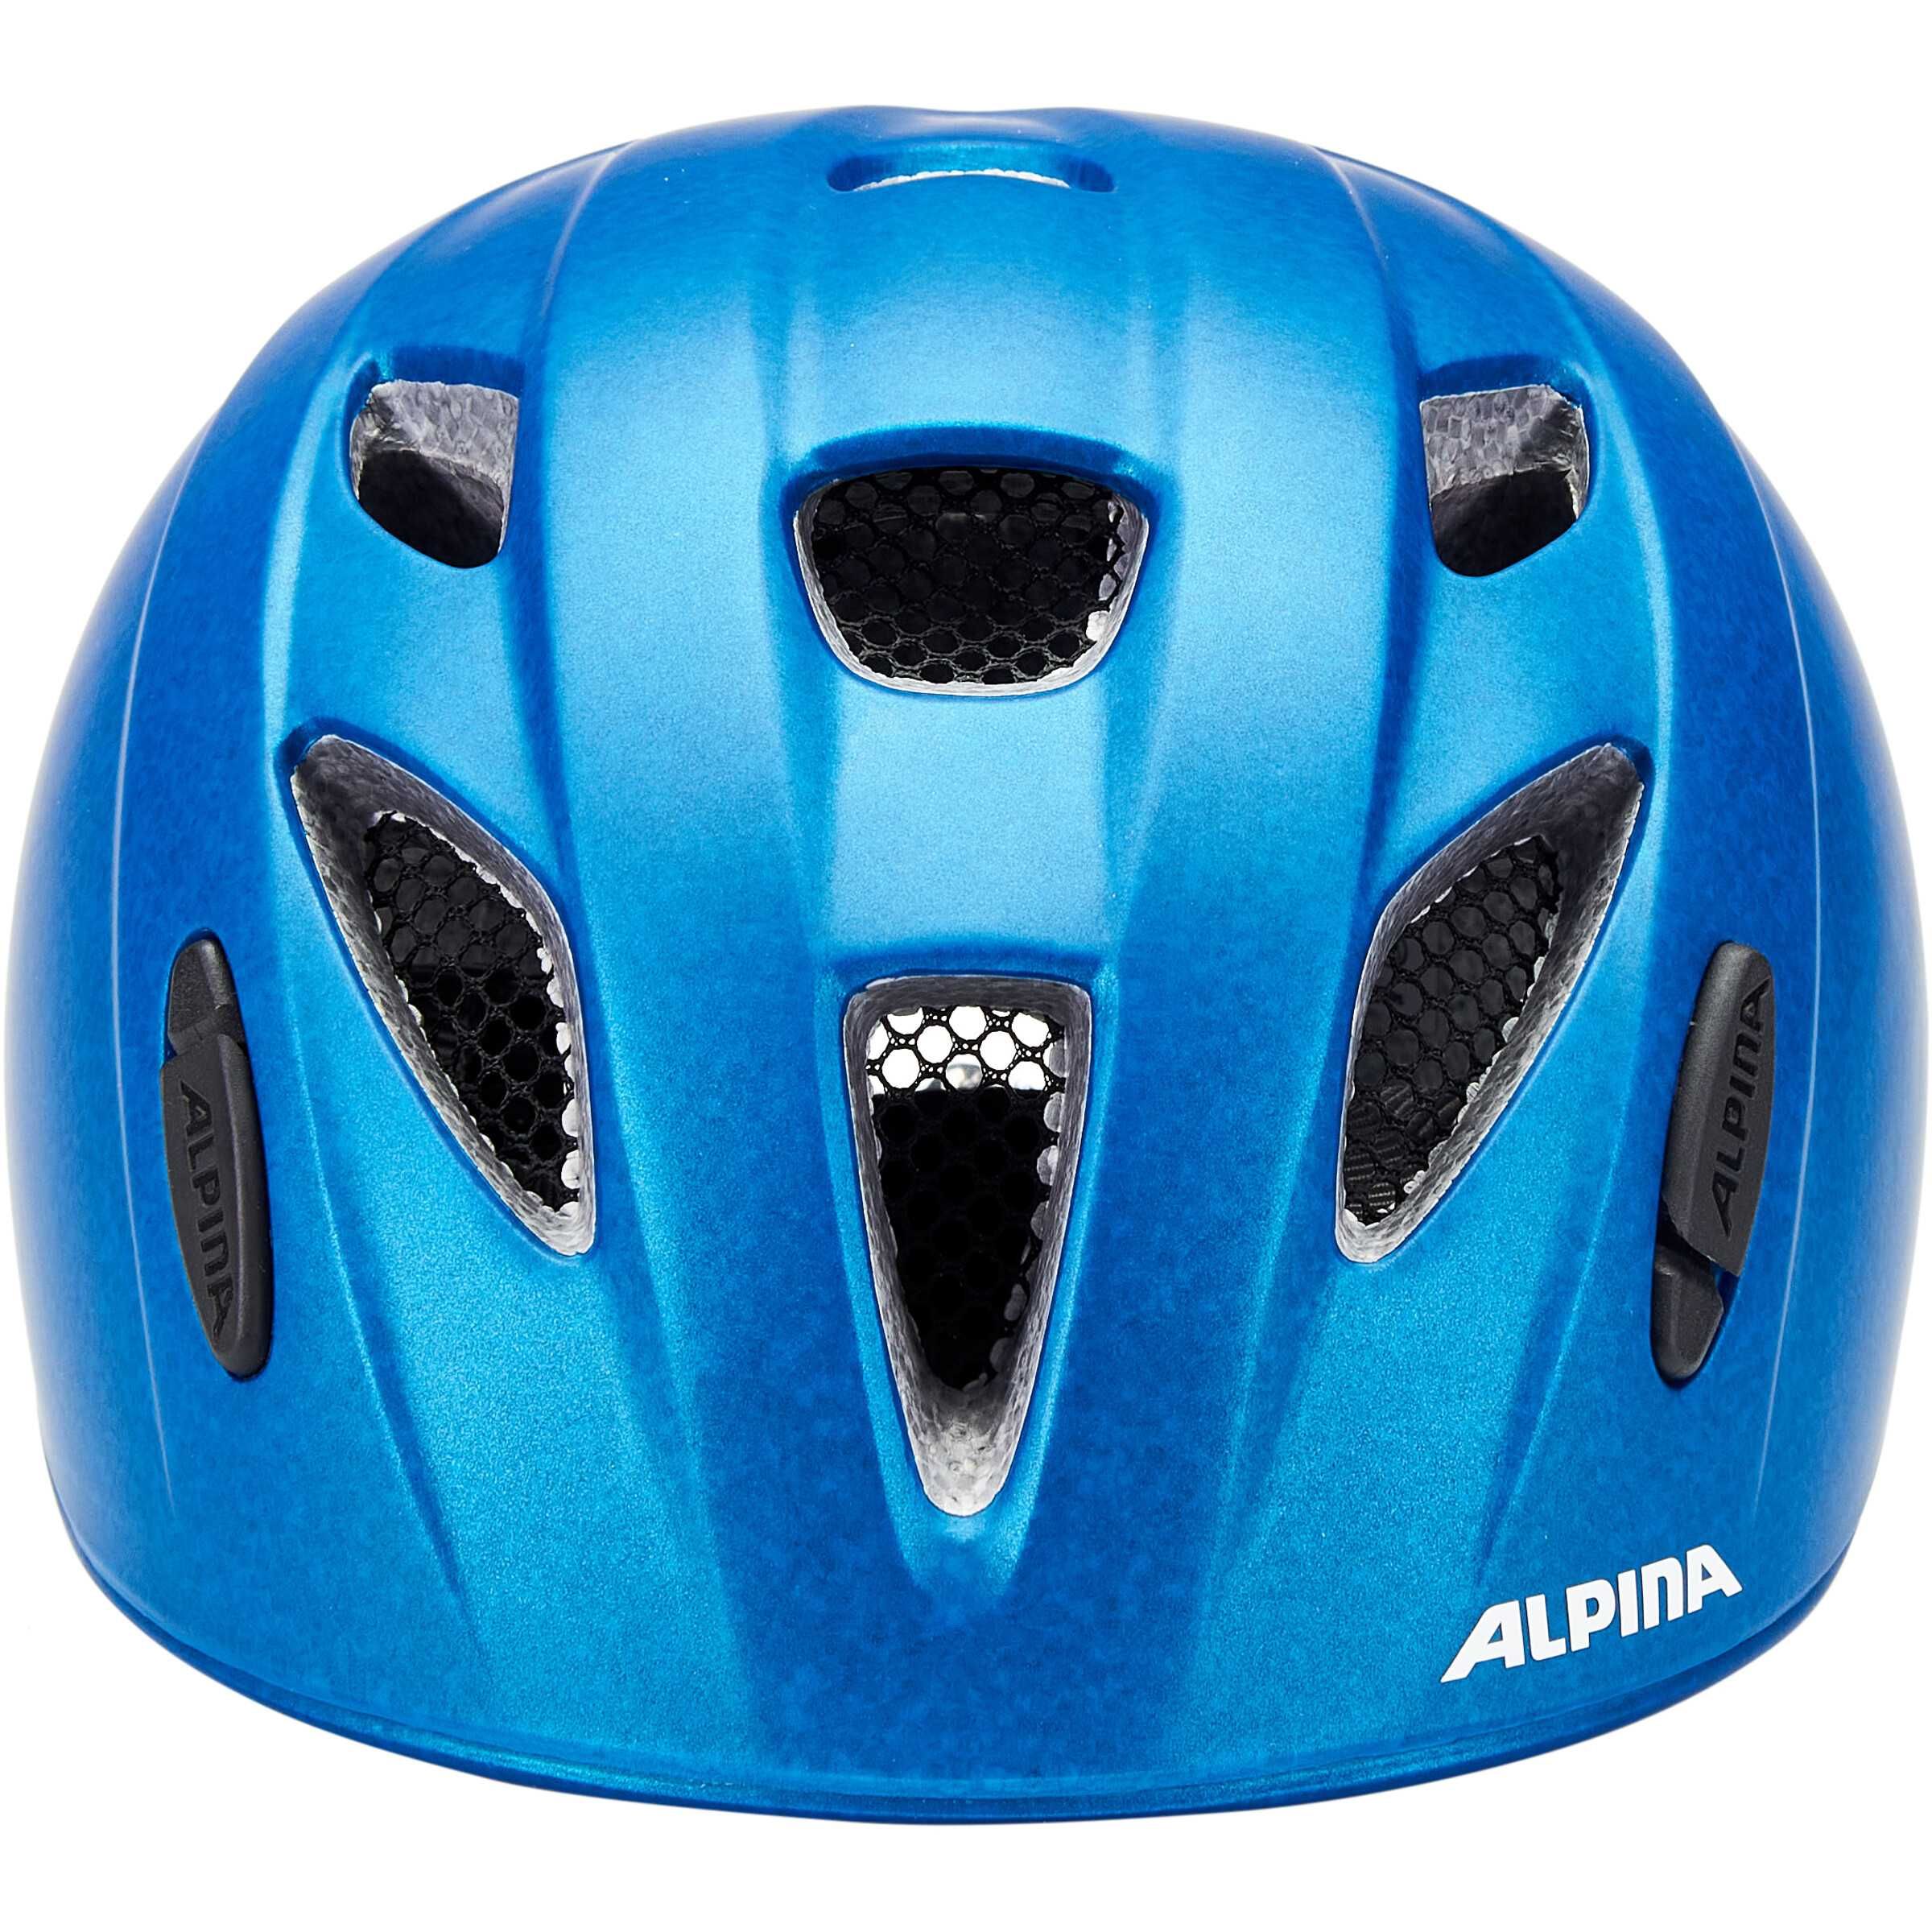 Alpina Ximo LE 45 49 blue dziecięcy kask rowerowy hulajnoga